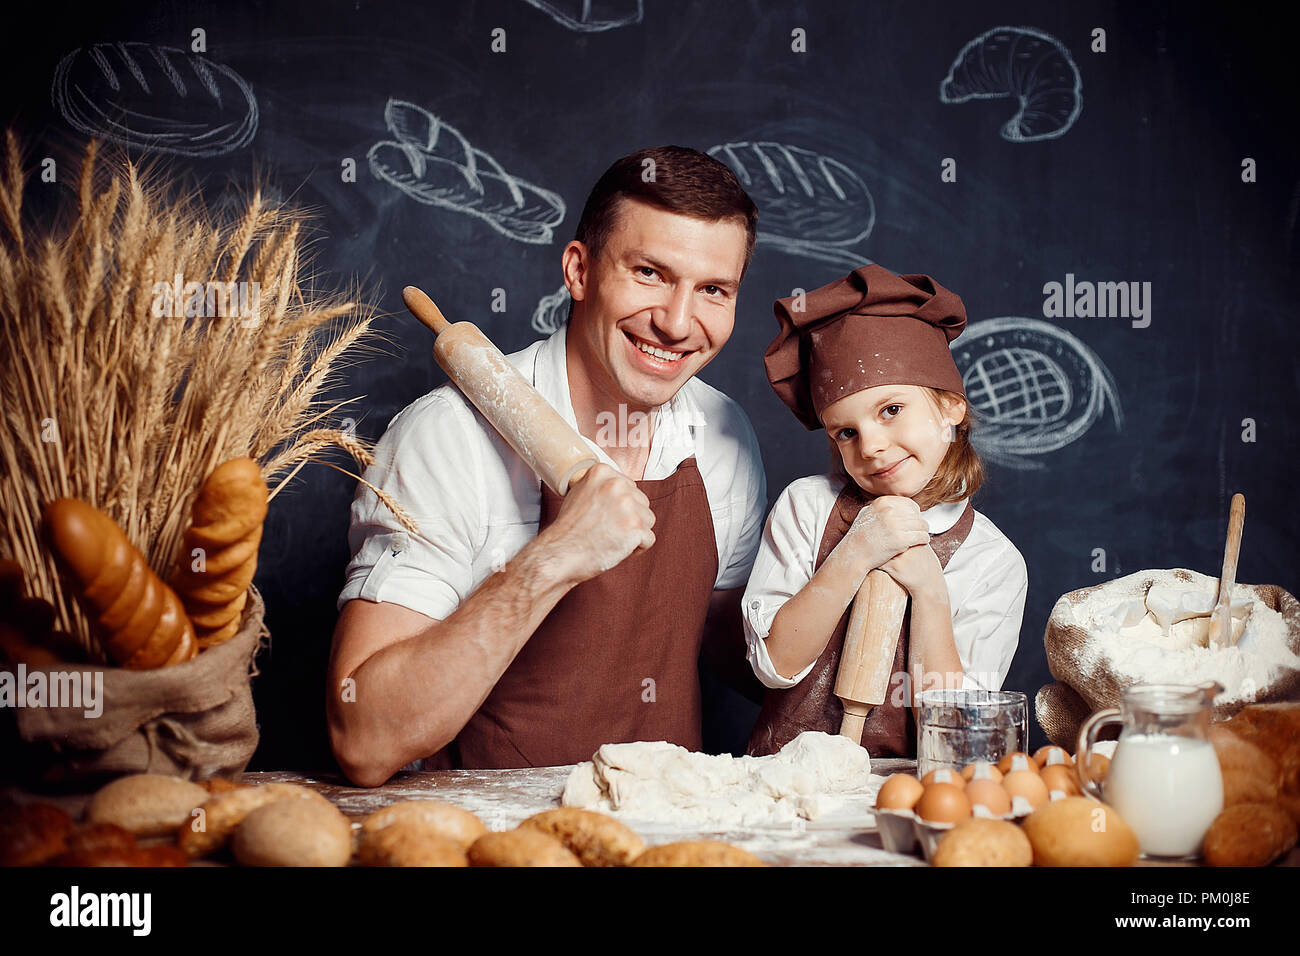 Adulto felice l'uomo con la bambina indossando grembiuli e trattenere i perni di rotolamento guardando la fotocamera mentre si effettua la pasta di pane Foto Stock